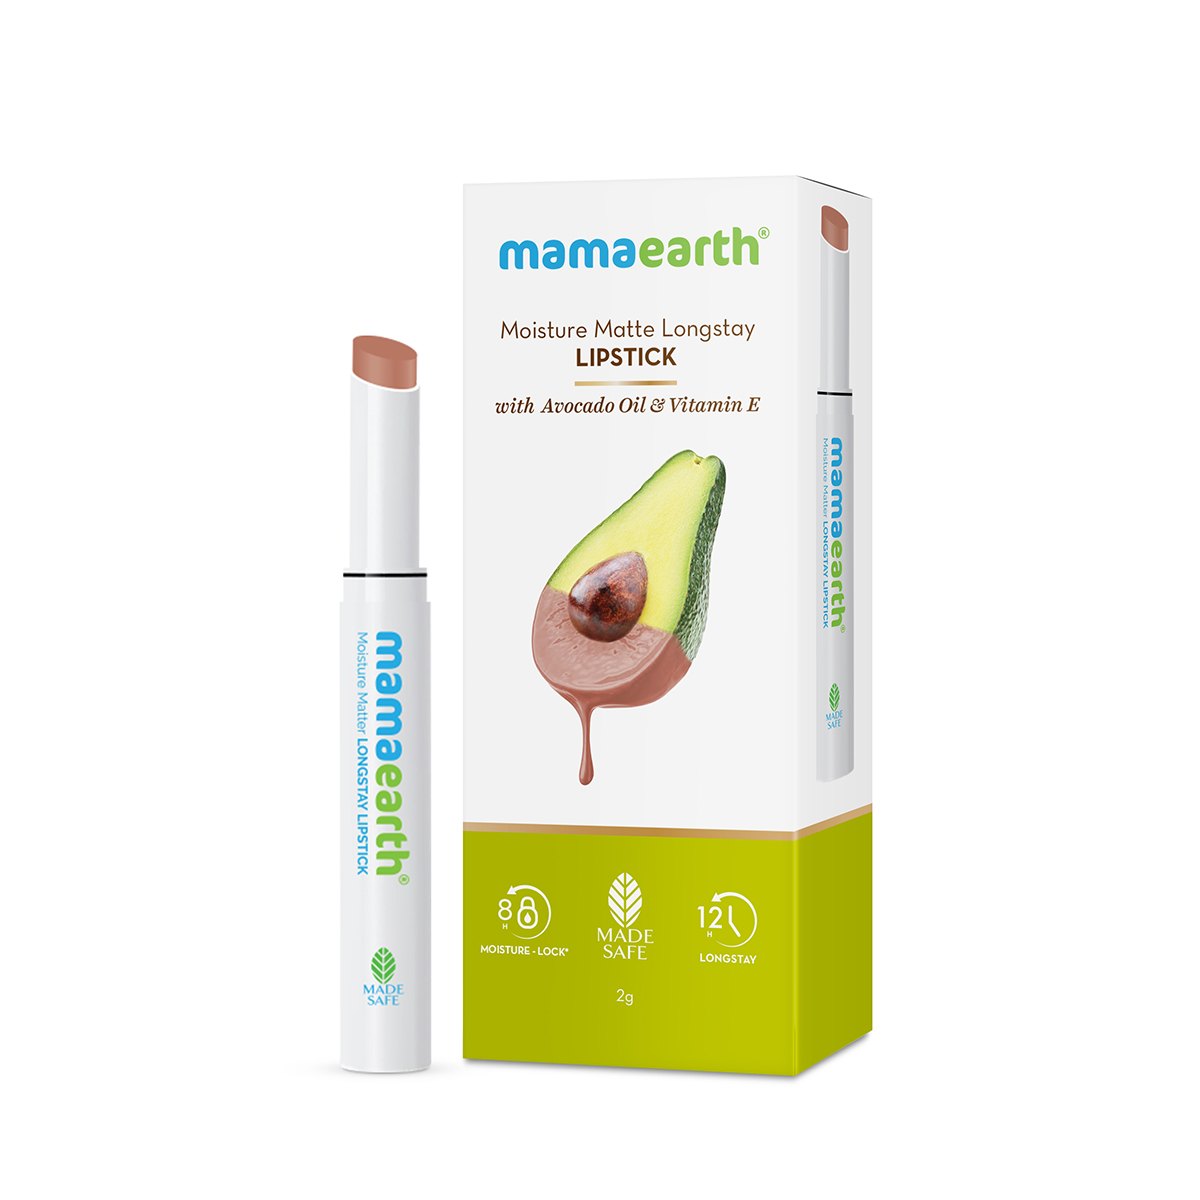 Mamaearth Moisture Matte Long Stay Lipstick